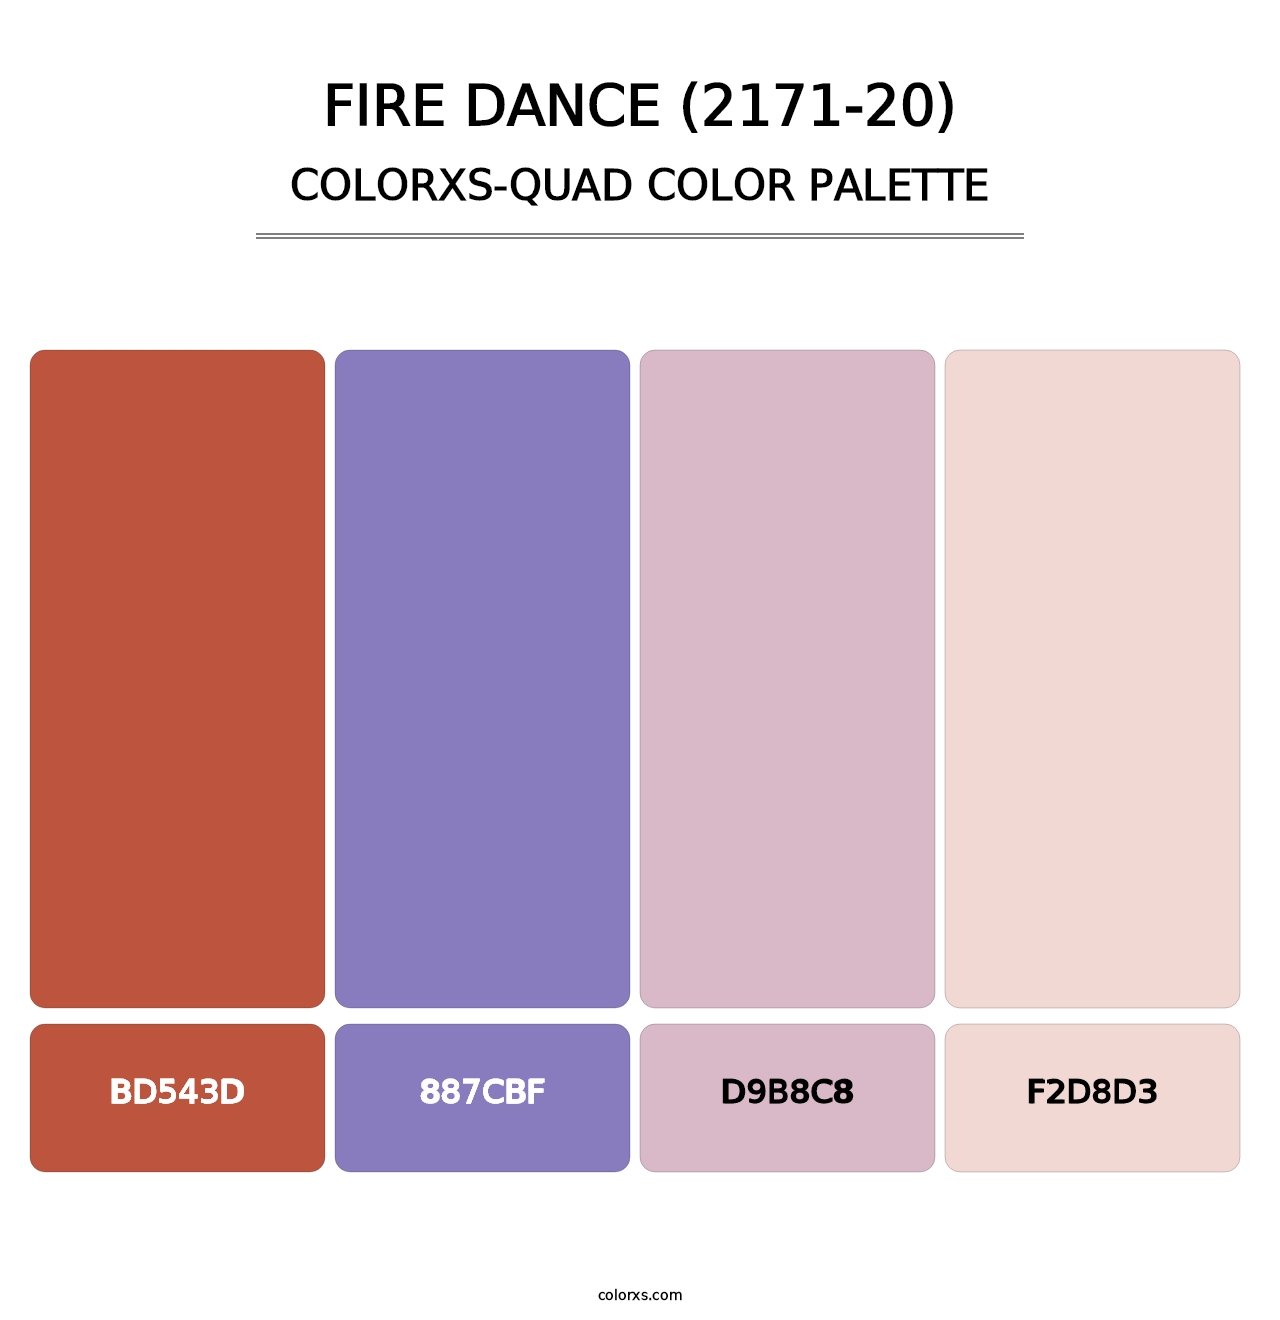 Fire Dance (2171-20) - Colorxs Quad Palette